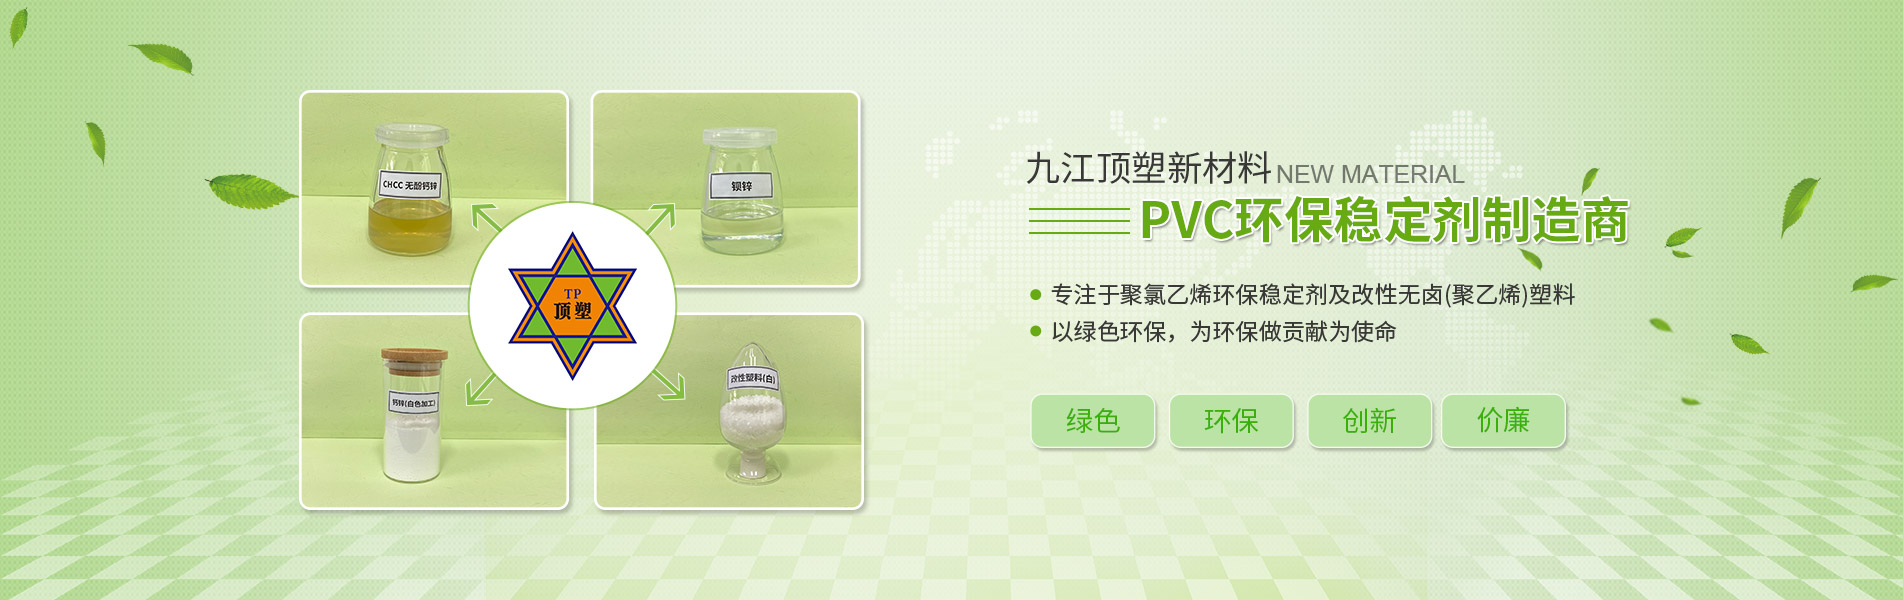 PVC穩定劑發展趨勢